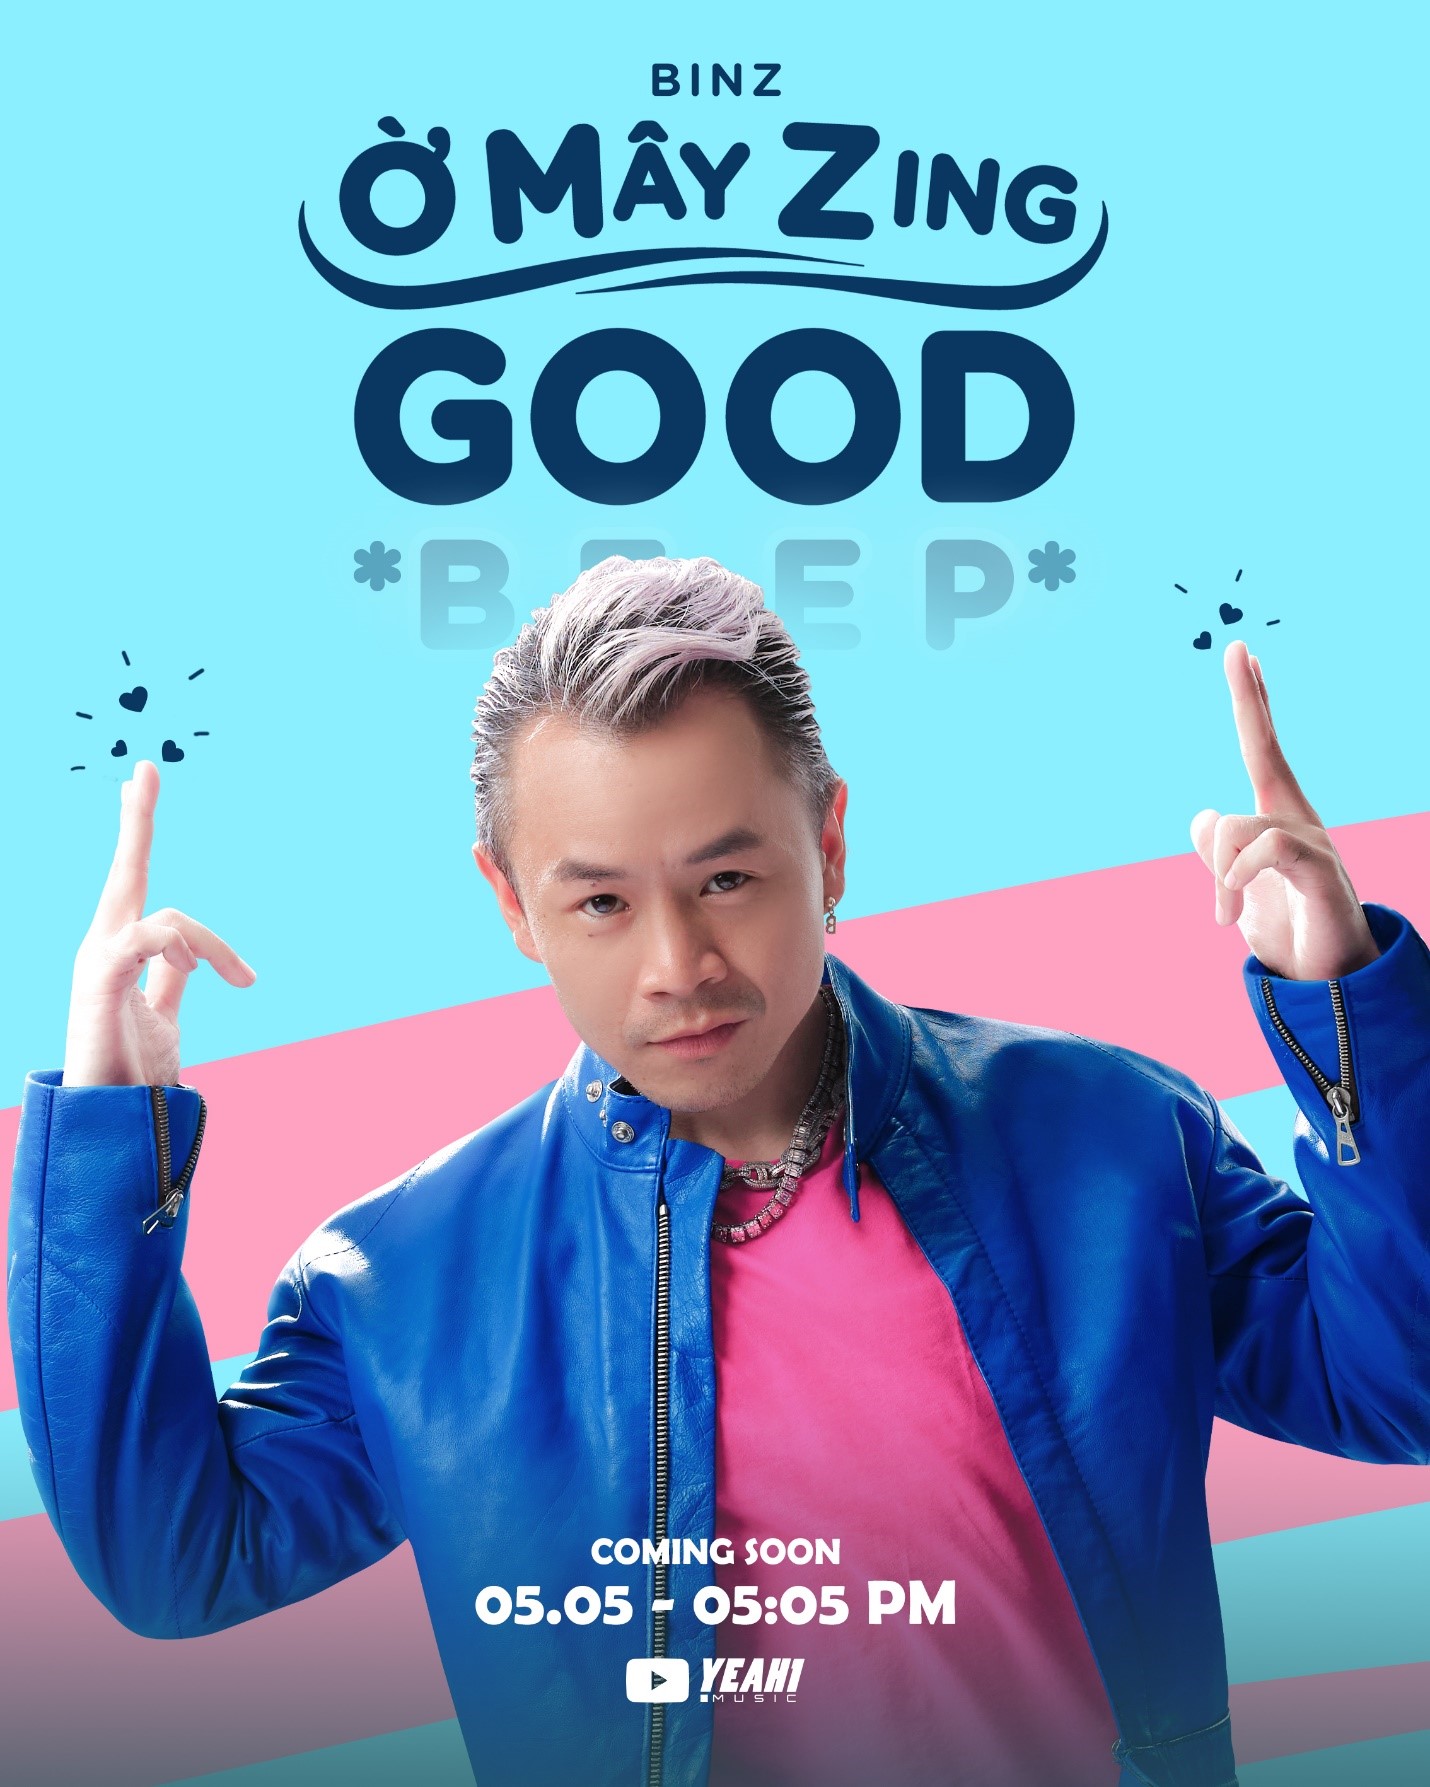 Trai hư Binz vào vai “goodboy”, tung loạt ảnh hậu trường MV “Ờ mây zing good…” khiến fan girls đổ rạp - ảnh 4